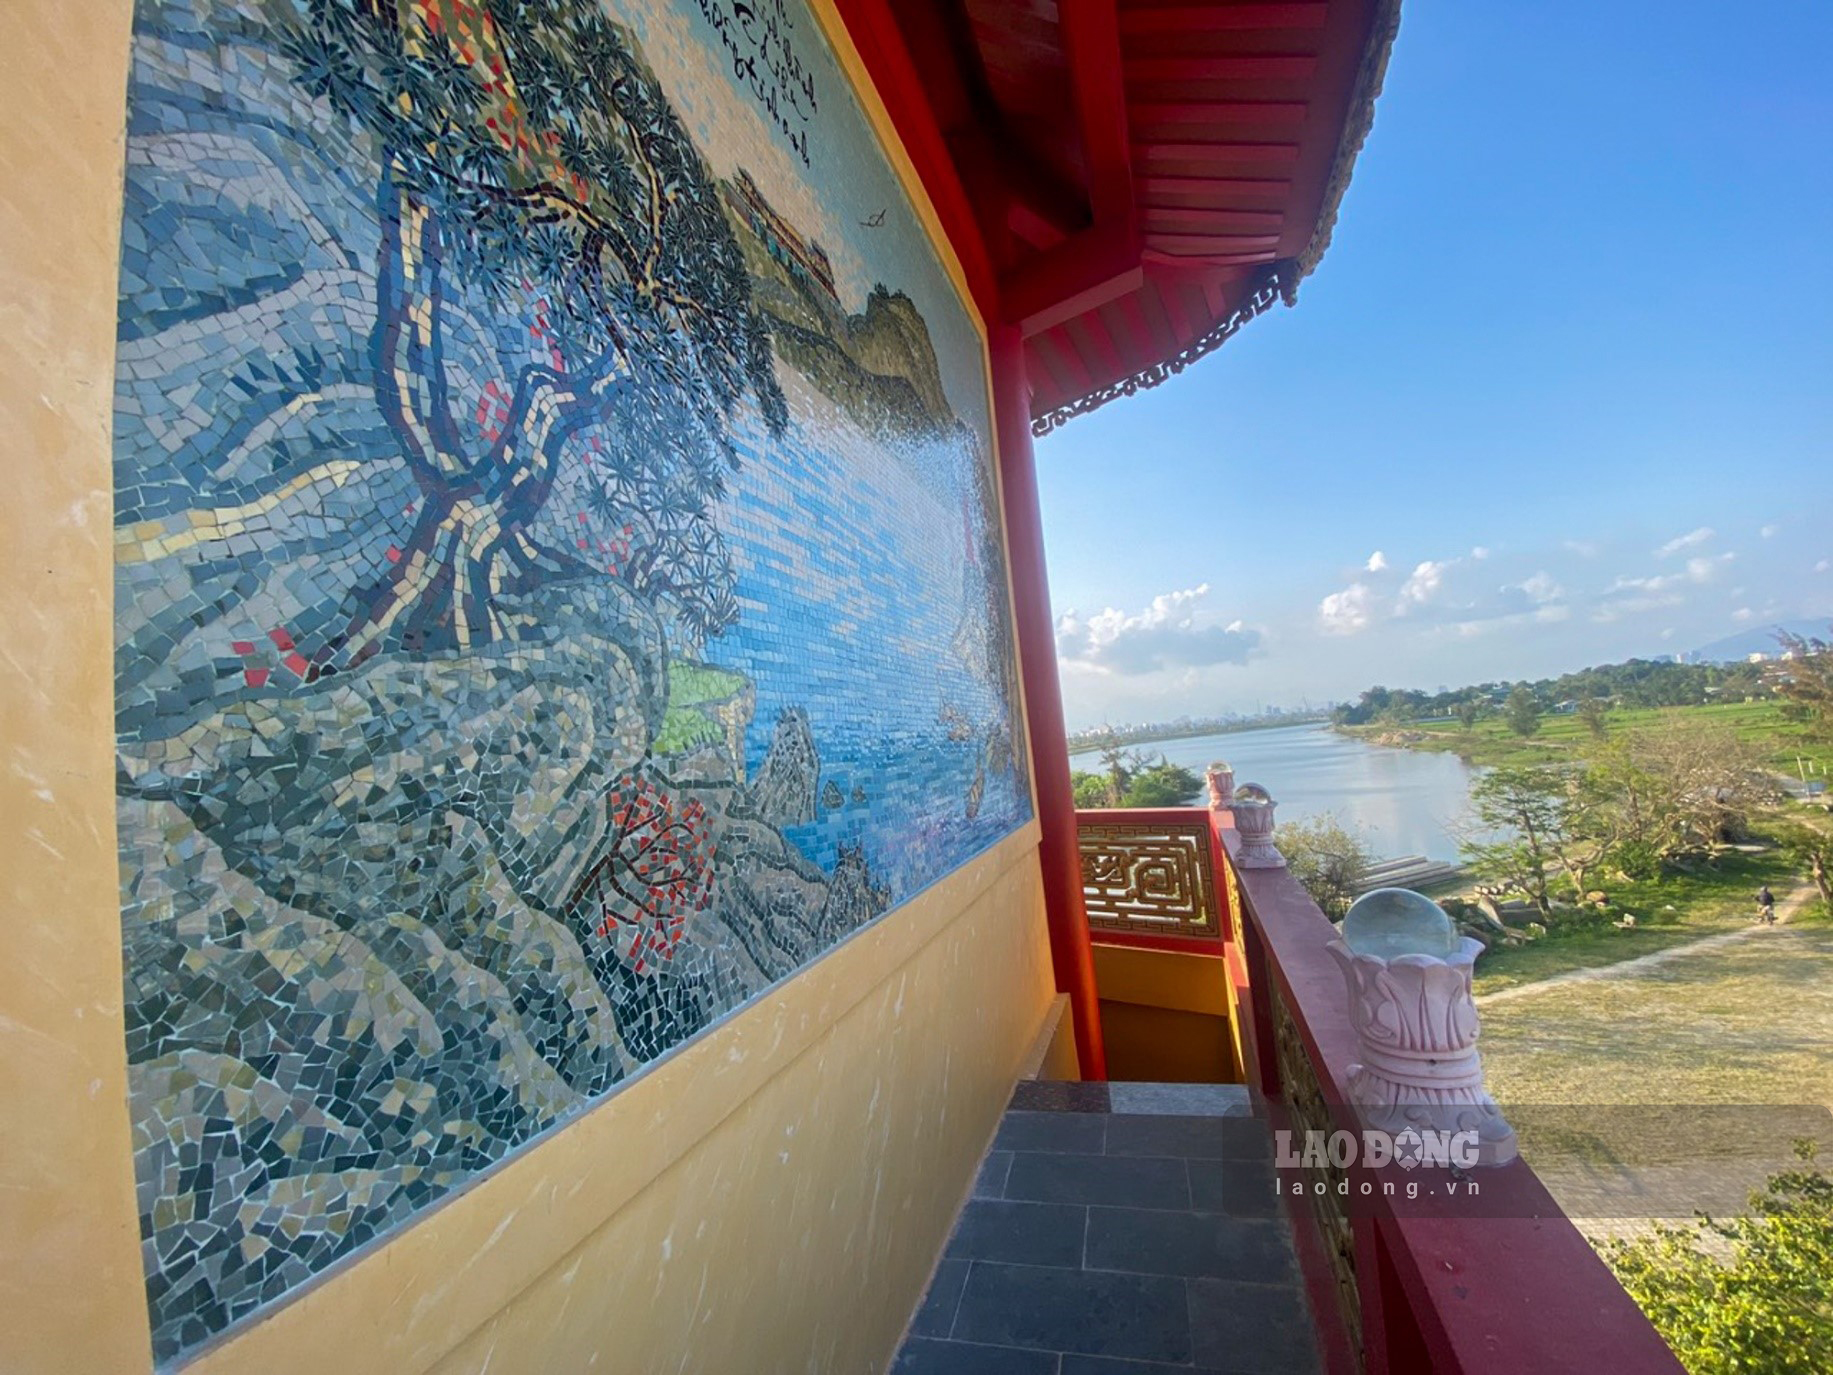 Các địa danh nổi tiếng xứ Huế như sông Hương, chùa Thiên Mụ được thể hiện trong 1 bức tranh sứ tại đây.